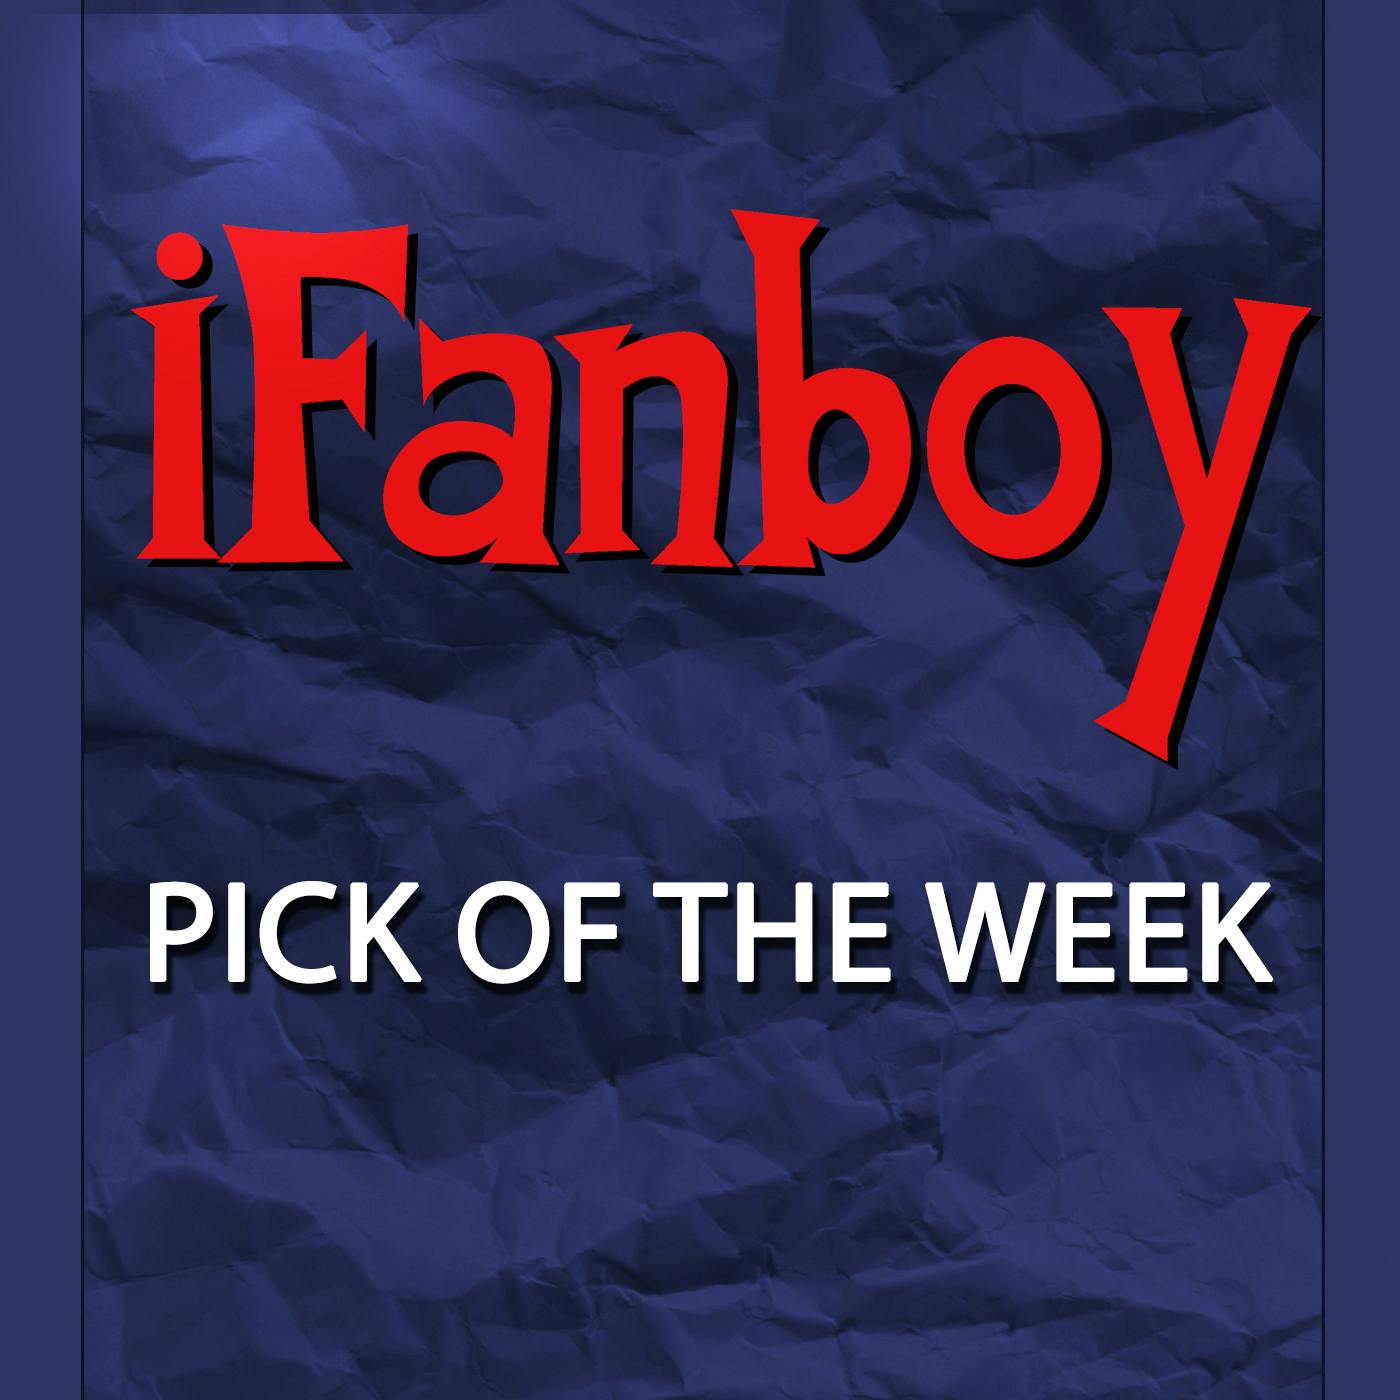 Pick of the Week #895 – Birds of Prey #1